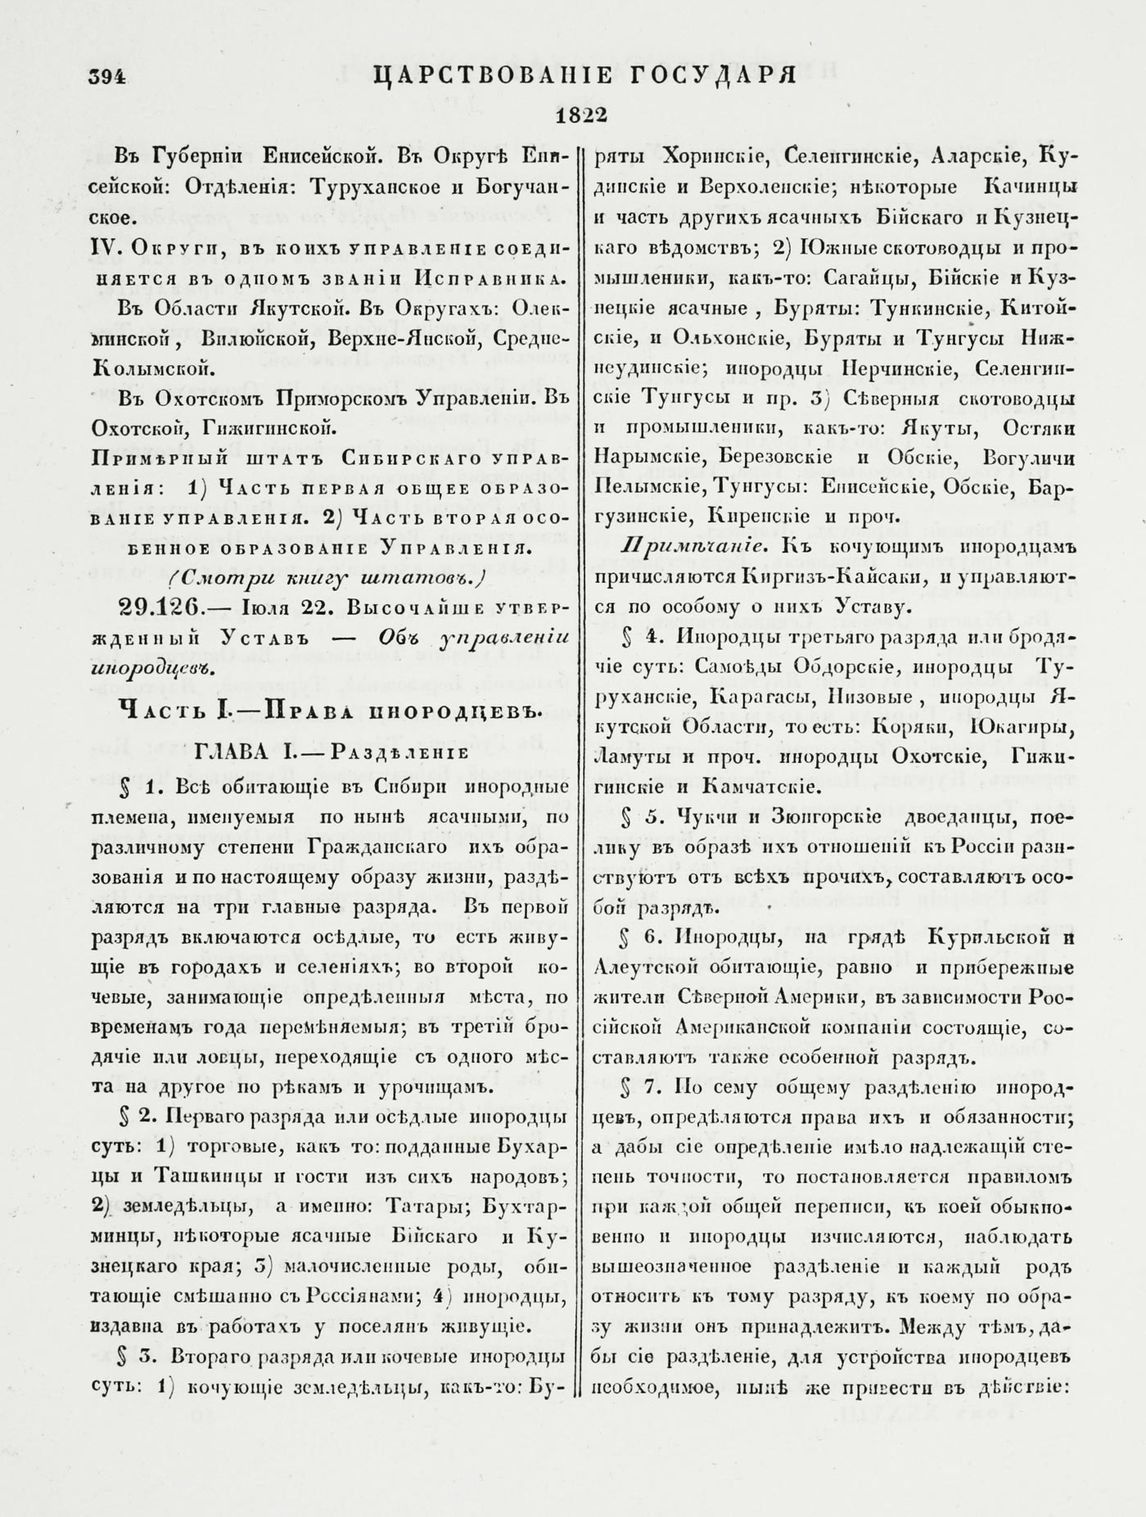 Статья, посвященная 250-летию со дня рождения М.М. Сперанского и 200-летию принятия «Устава об управлении инородцев»